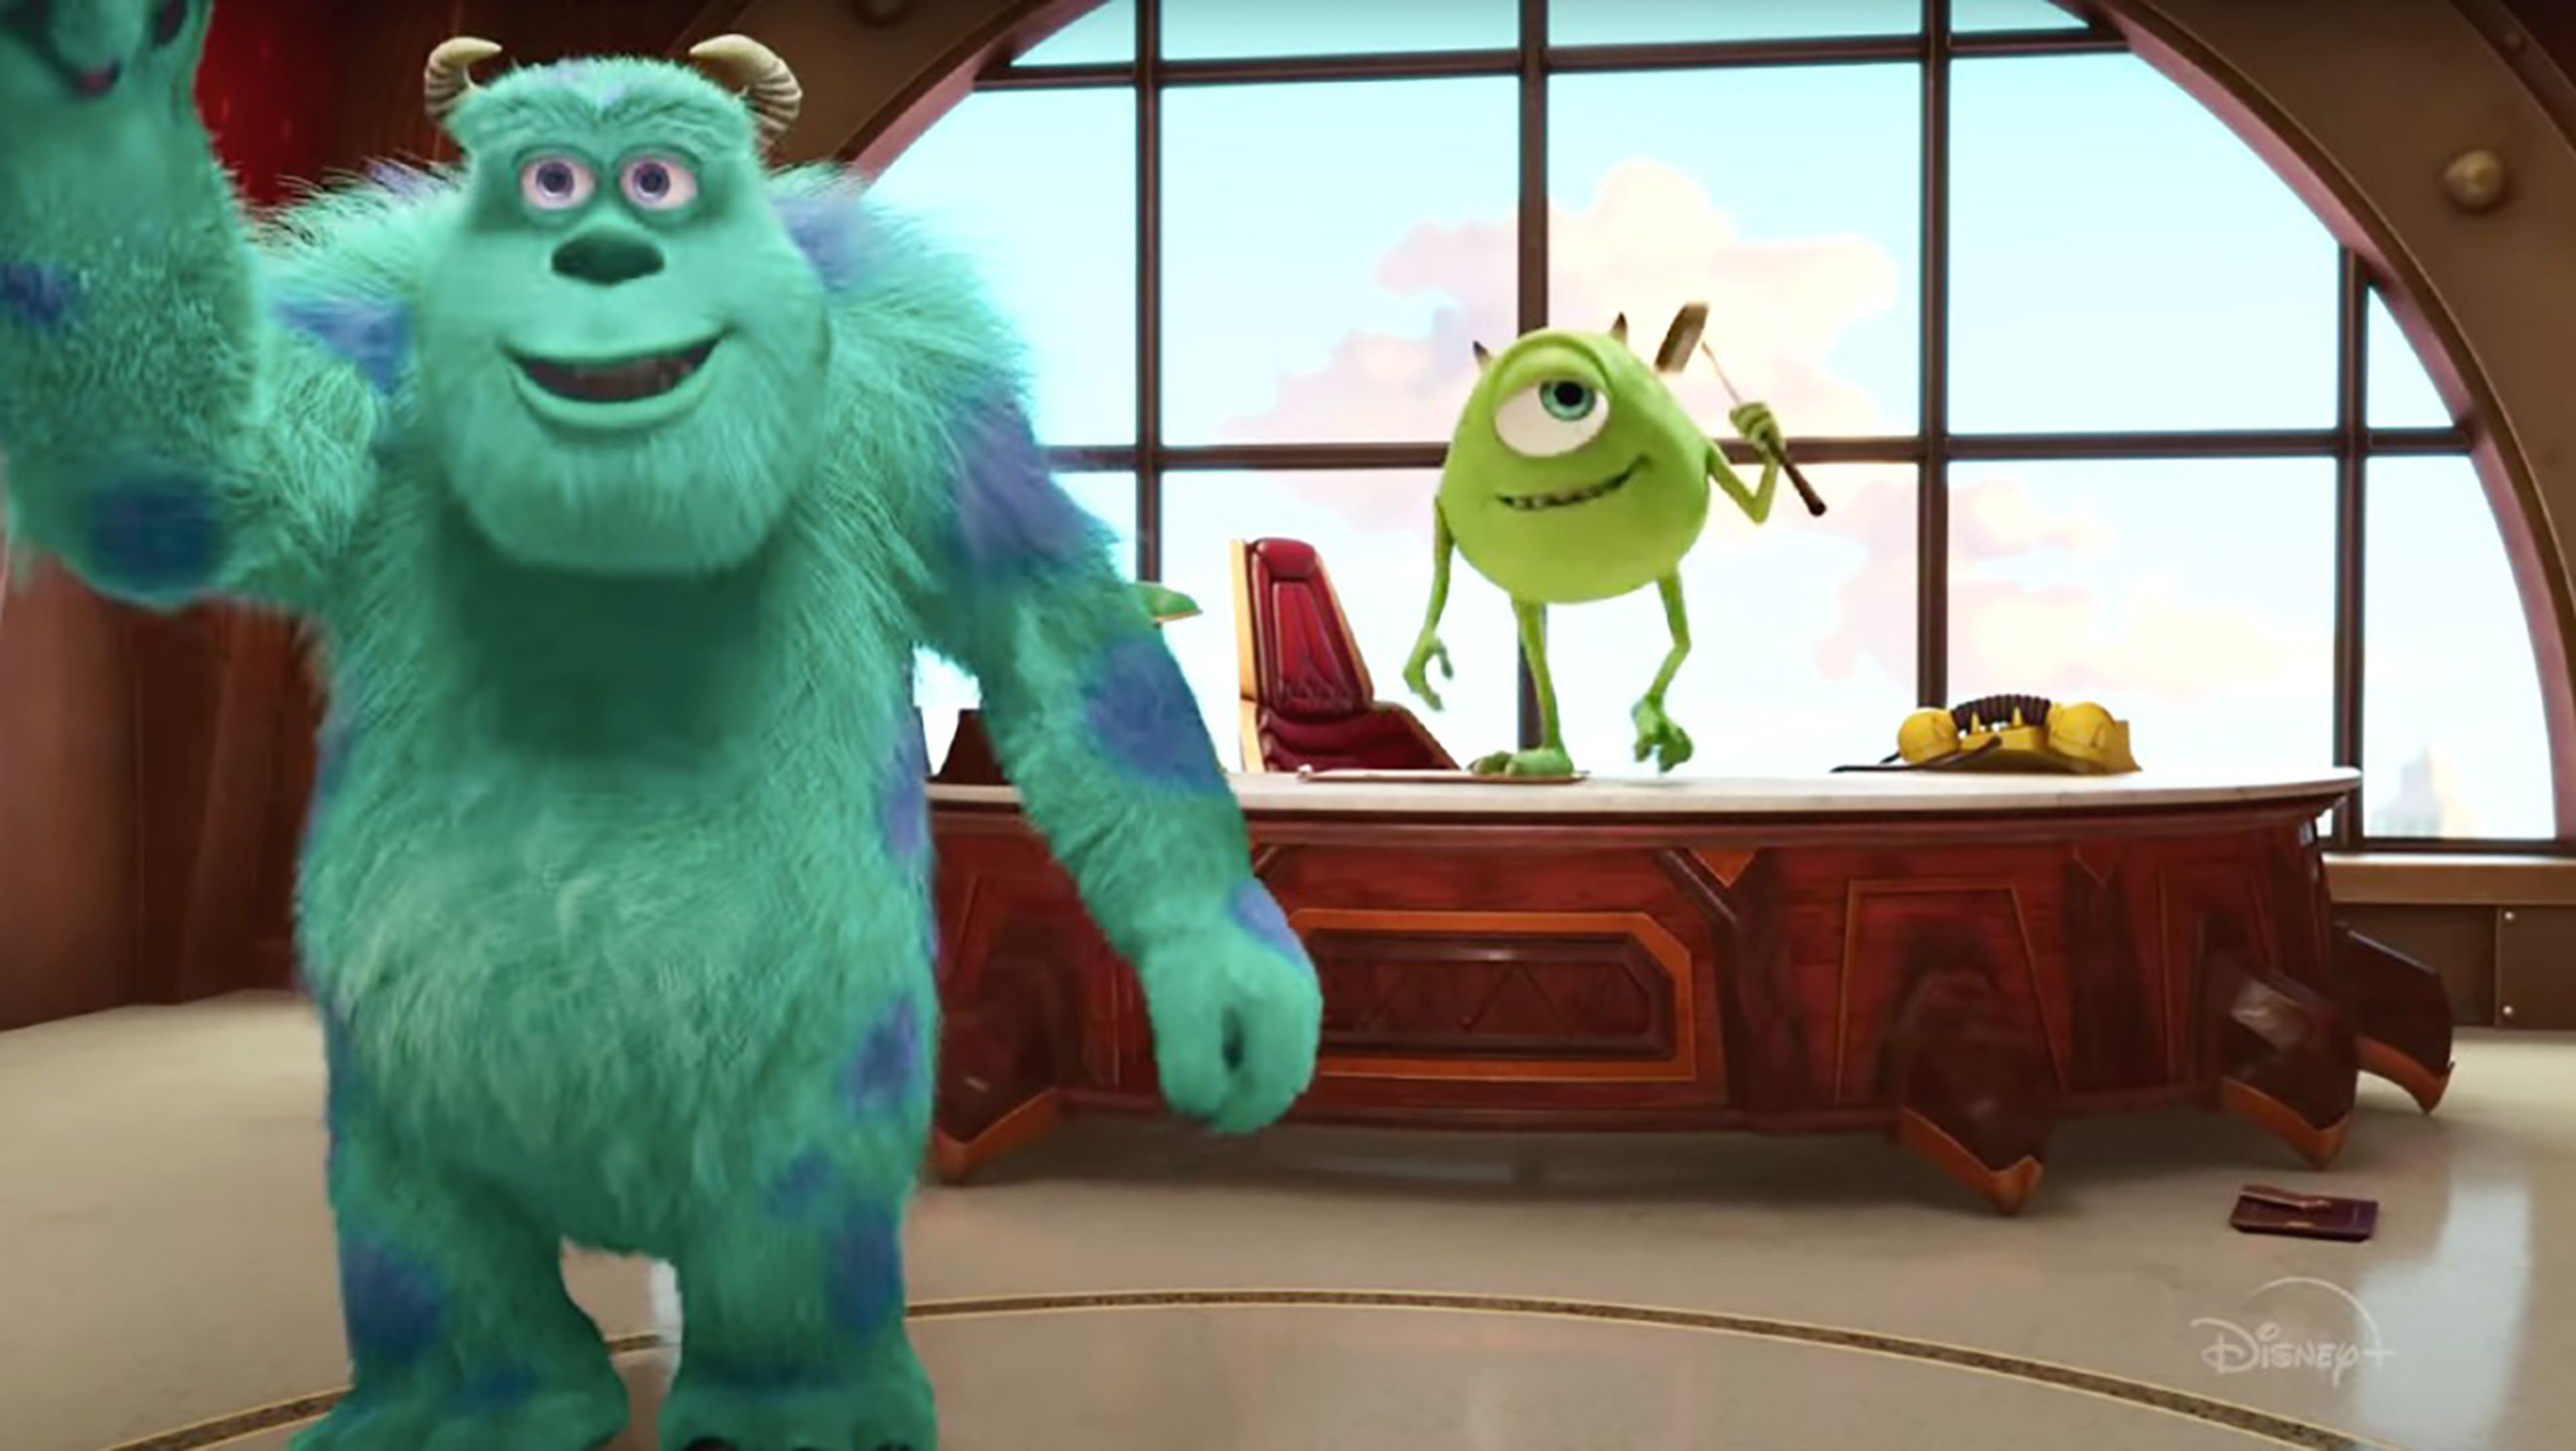 Monstruos a la obra (2021) crítica: Pixar acierta con su primera serie para  Disney+, una divertida secuela de 'Monstruos, S.A.